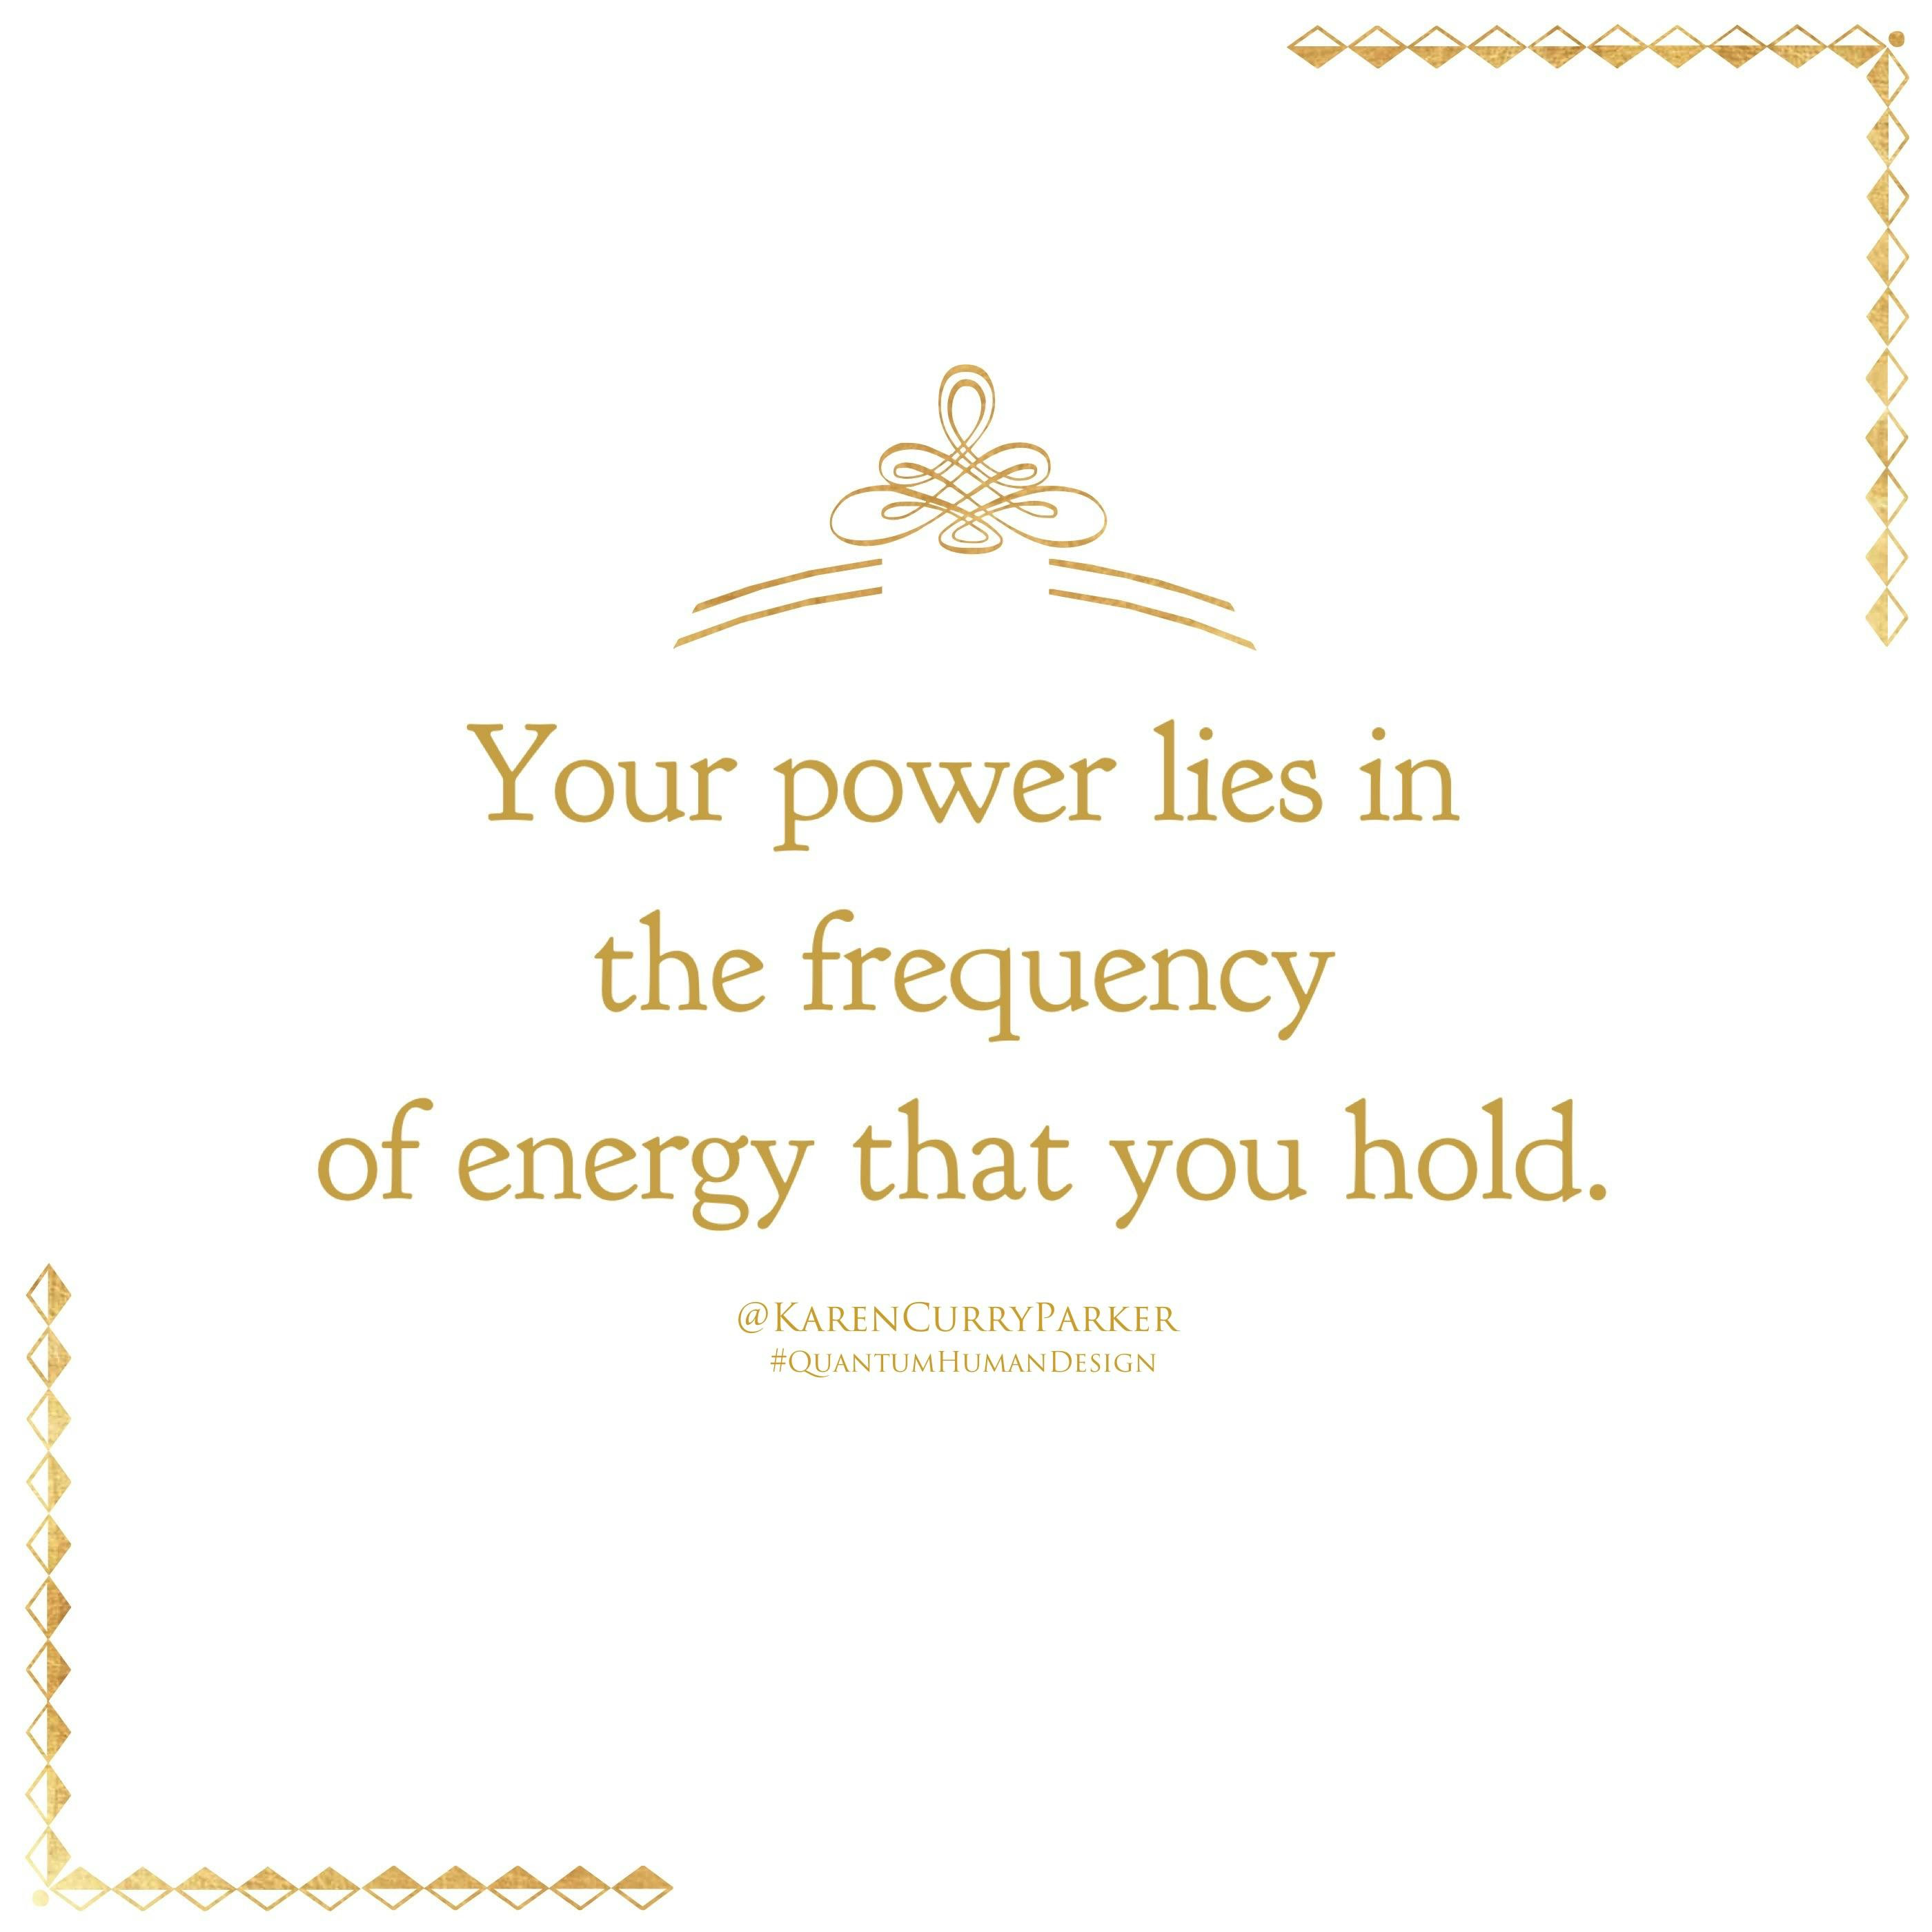 una imagen sobre la energía y la historia Tu poder radica en la frecuencia de la energía que posees